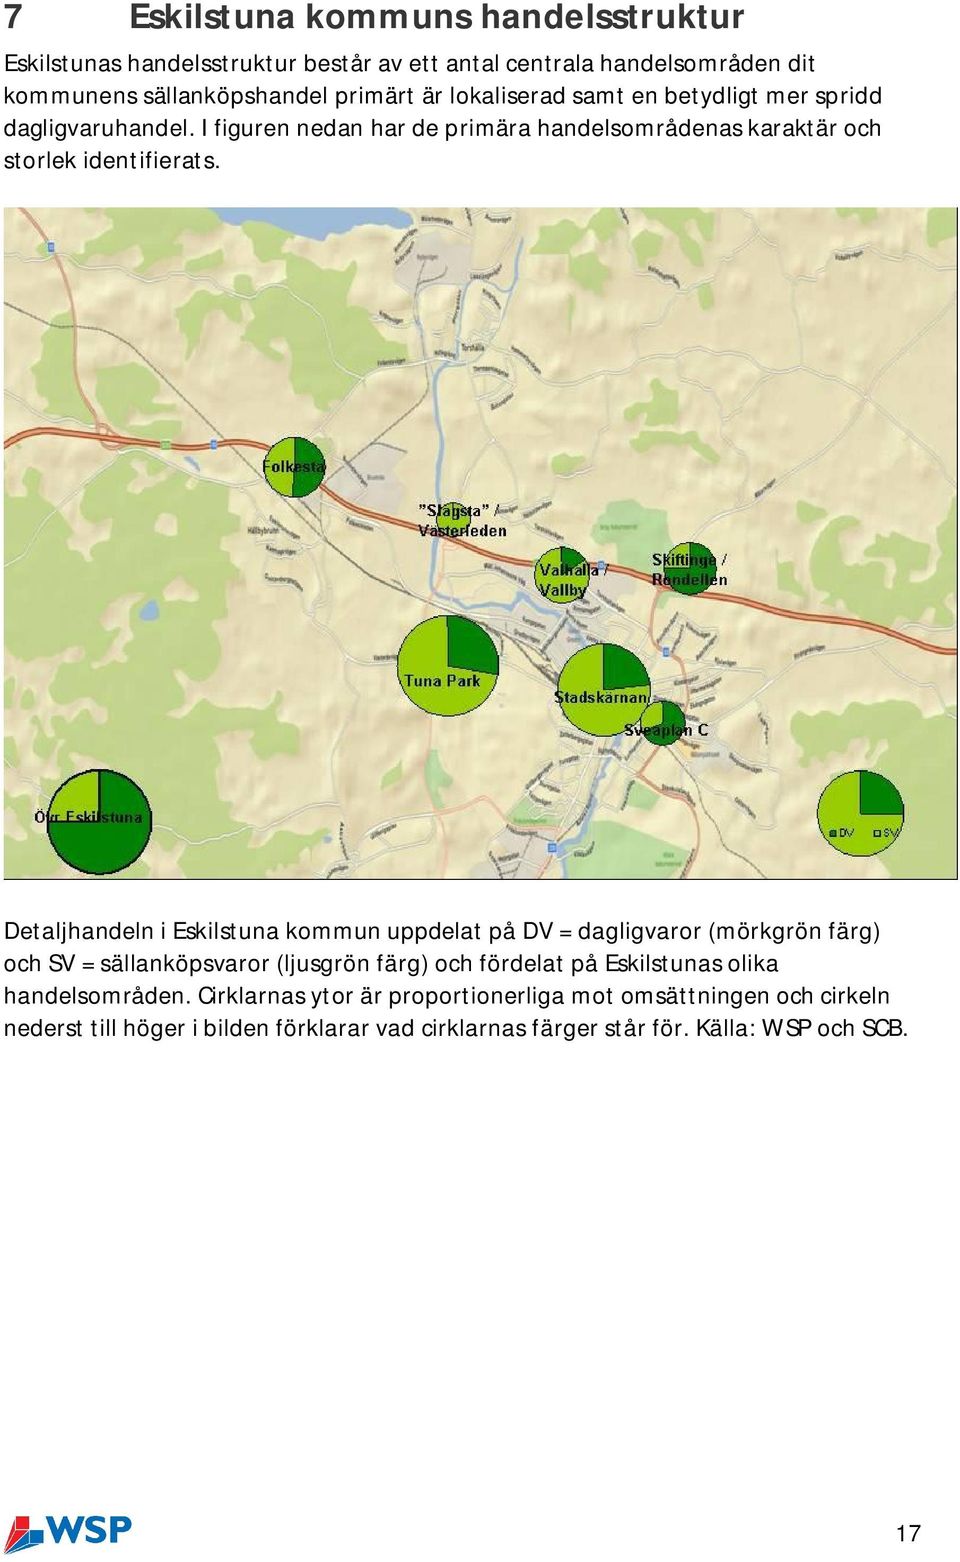 Detaljhandeln i Eskilstuna kommun uppdelat på DV = dagligvaror (mörkgrön färg) och SV = sällanköpsvaror (ljusgrön färg) och fördelat på Eskilstunas olika